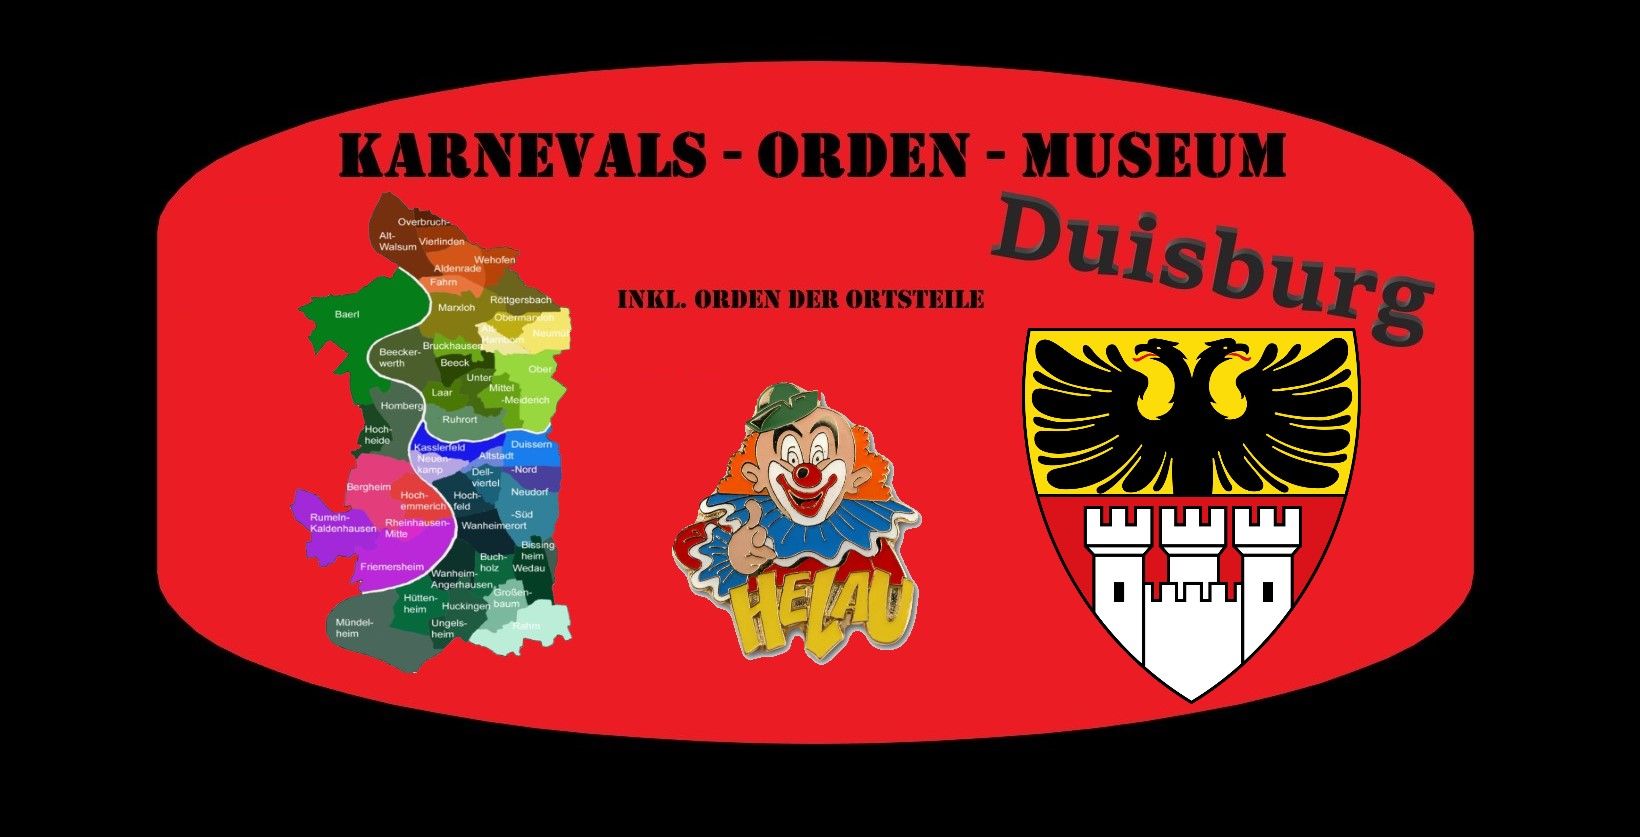 Landtagsorden | Karnevals-Orden-Museum-Duisburg